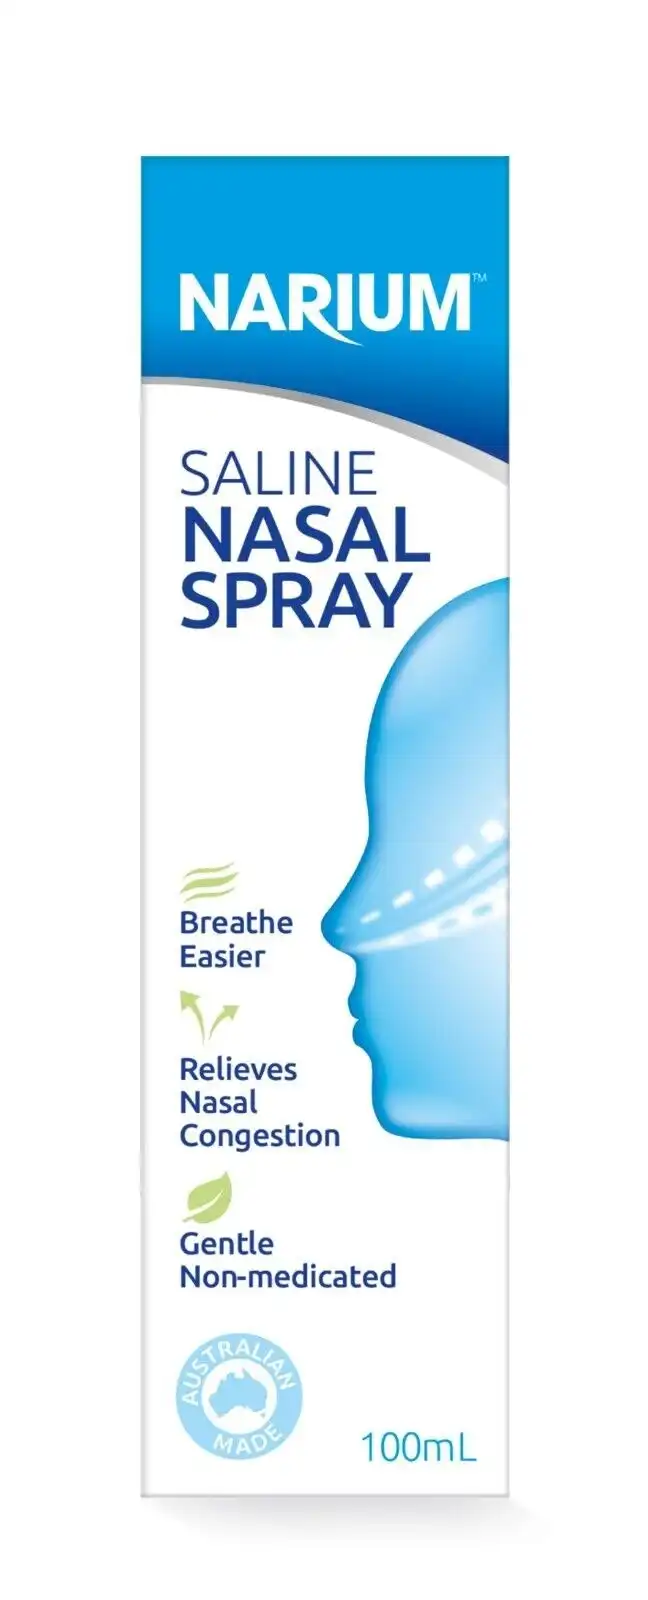 NARIUM Nasal Spray/Mist 100ml Saline Spray   Mist